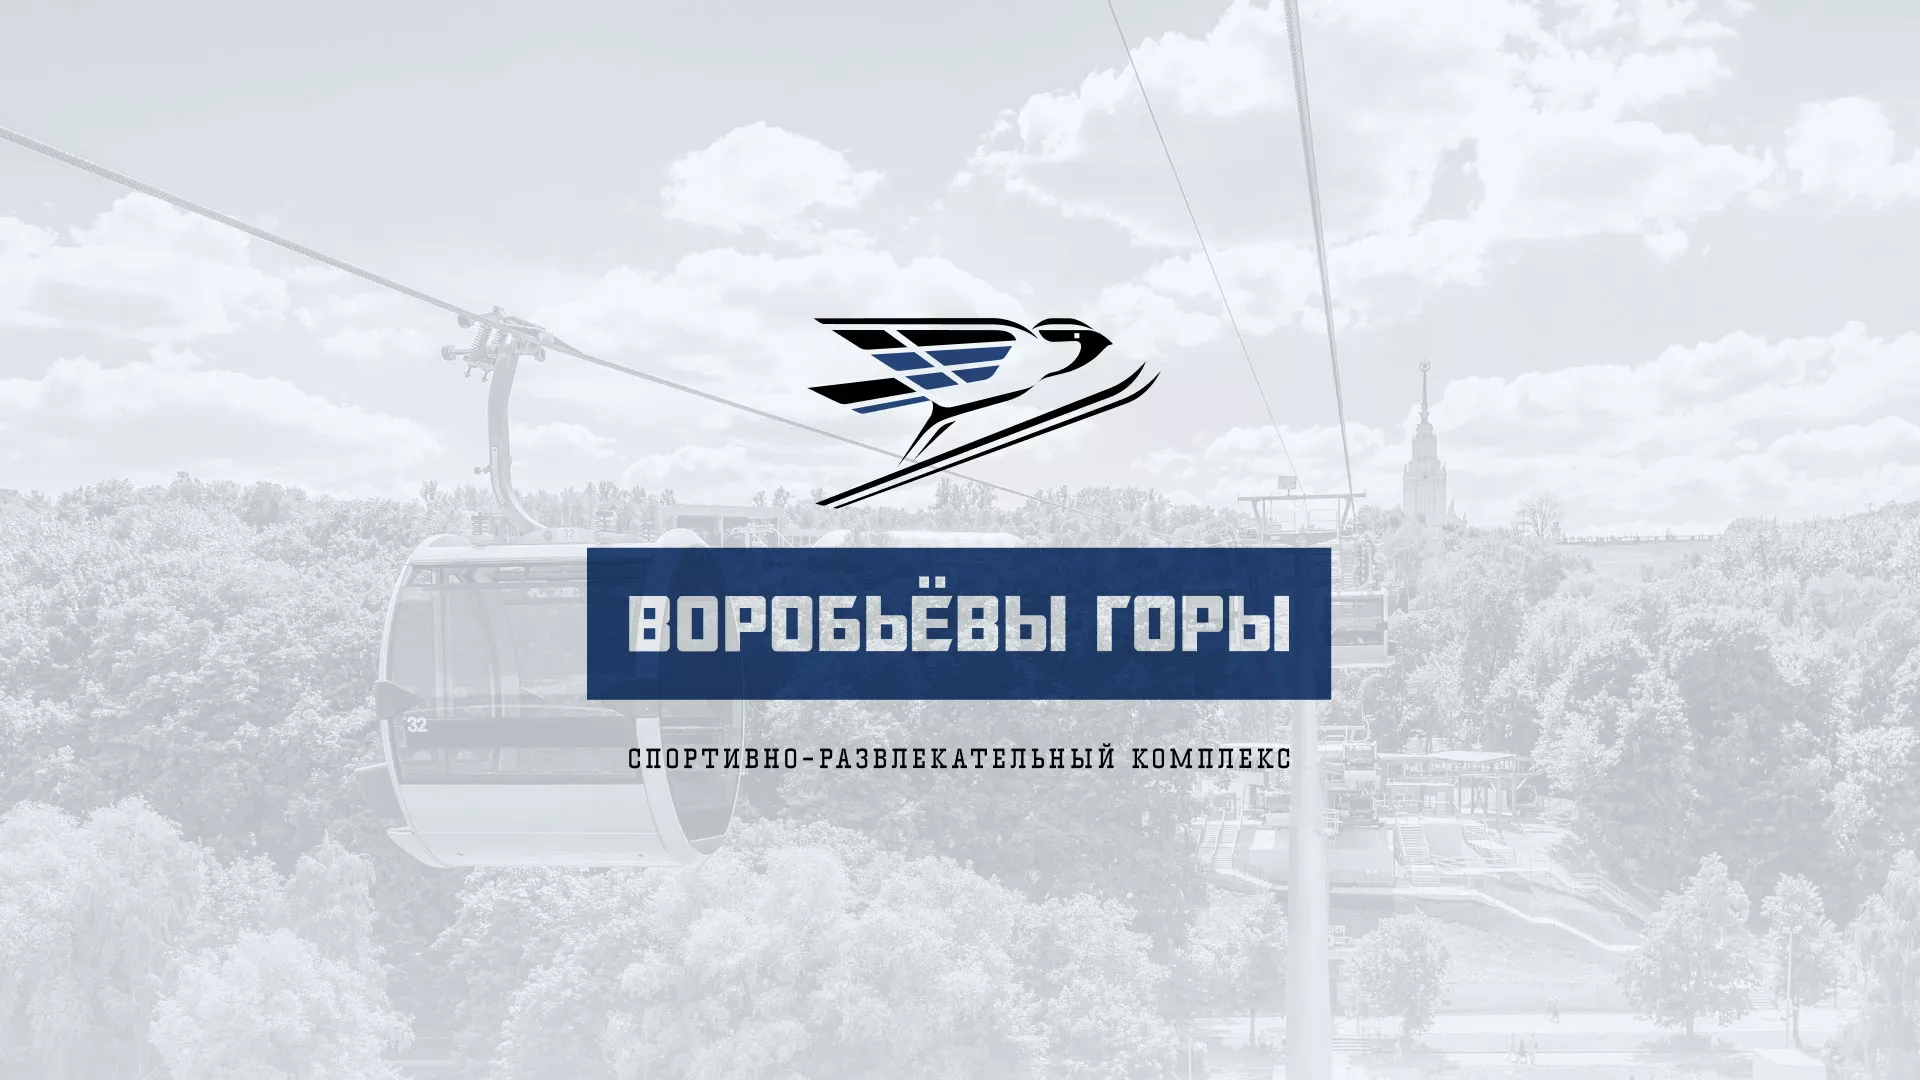 Разработка сайта в Зеленогорске для спортивно-развлекательного комплекса «Воробьёвы горы»